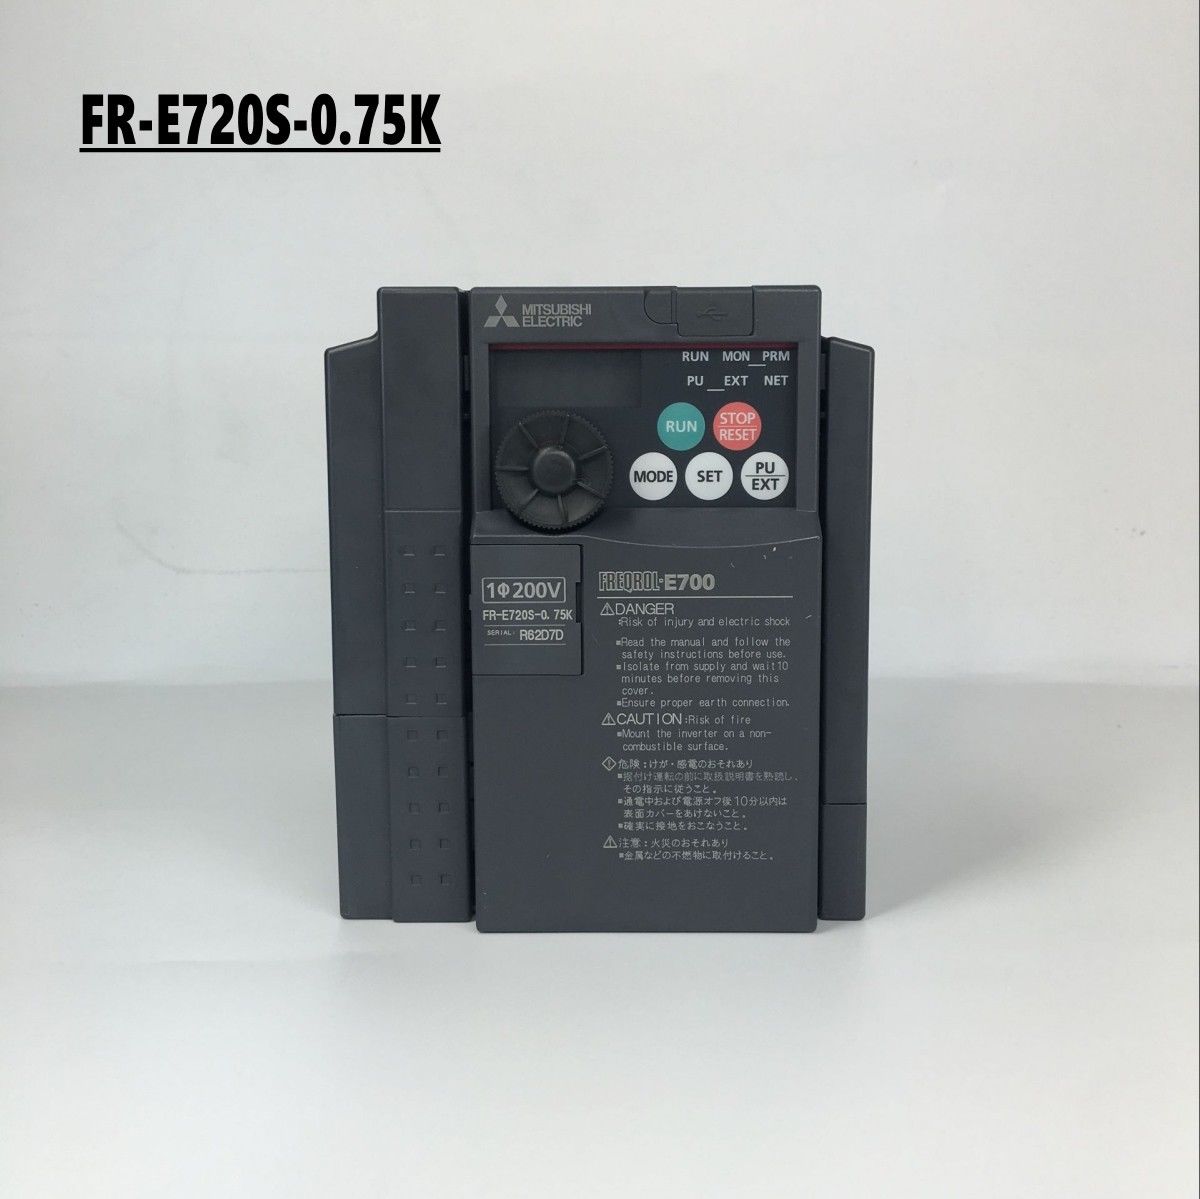 Brand New MITSUBISHI inverter FR-E720S-0.75K In Box FRE720S0.75K - Click Image to Close